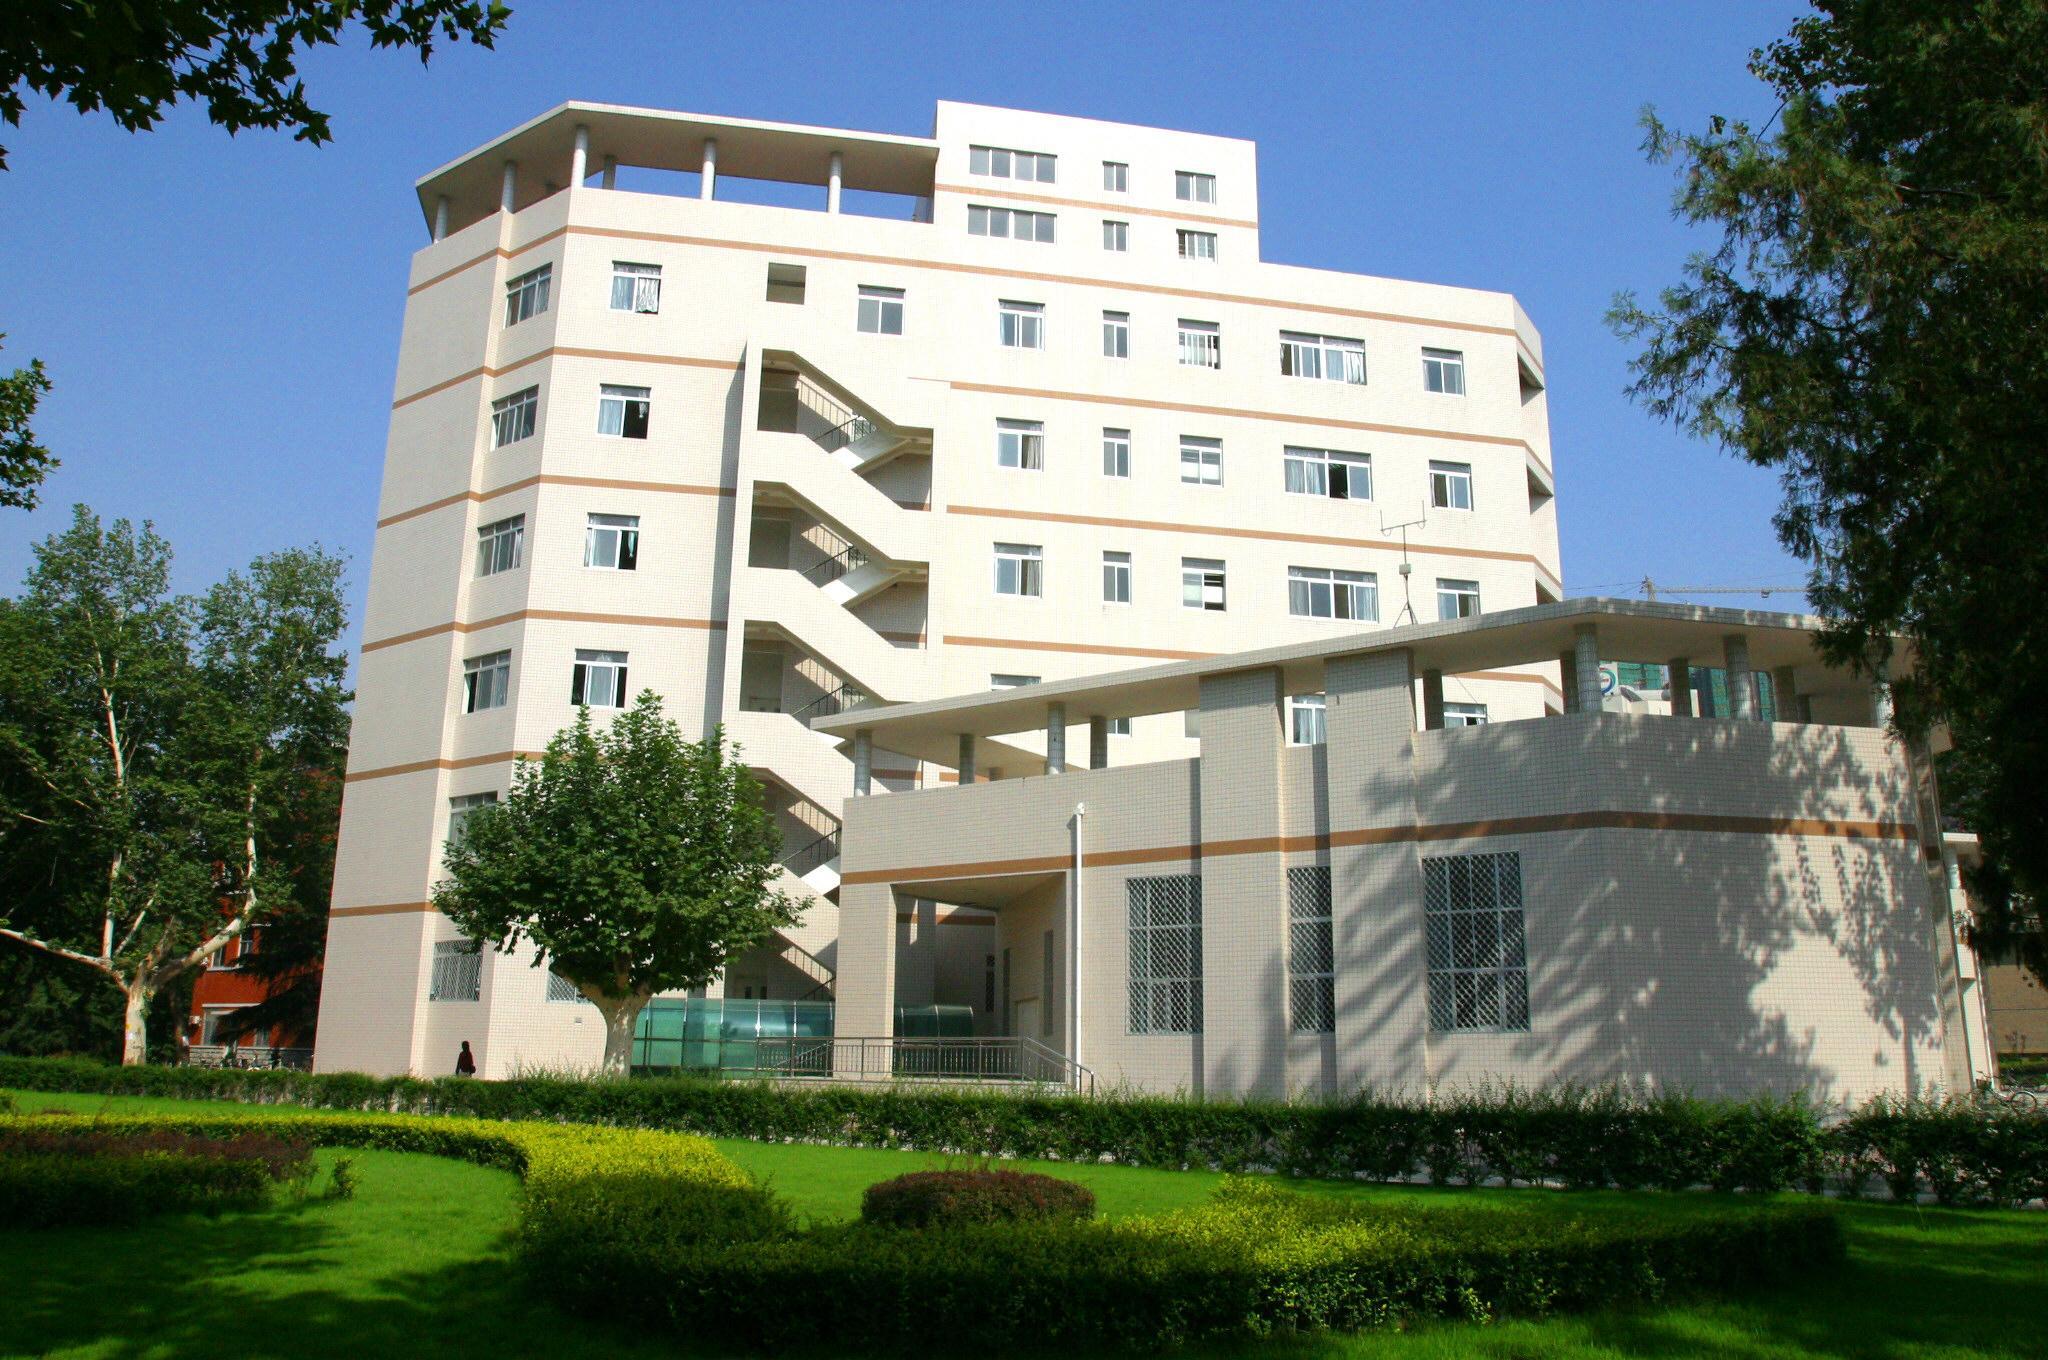 西安電子科技大學技術物理學院